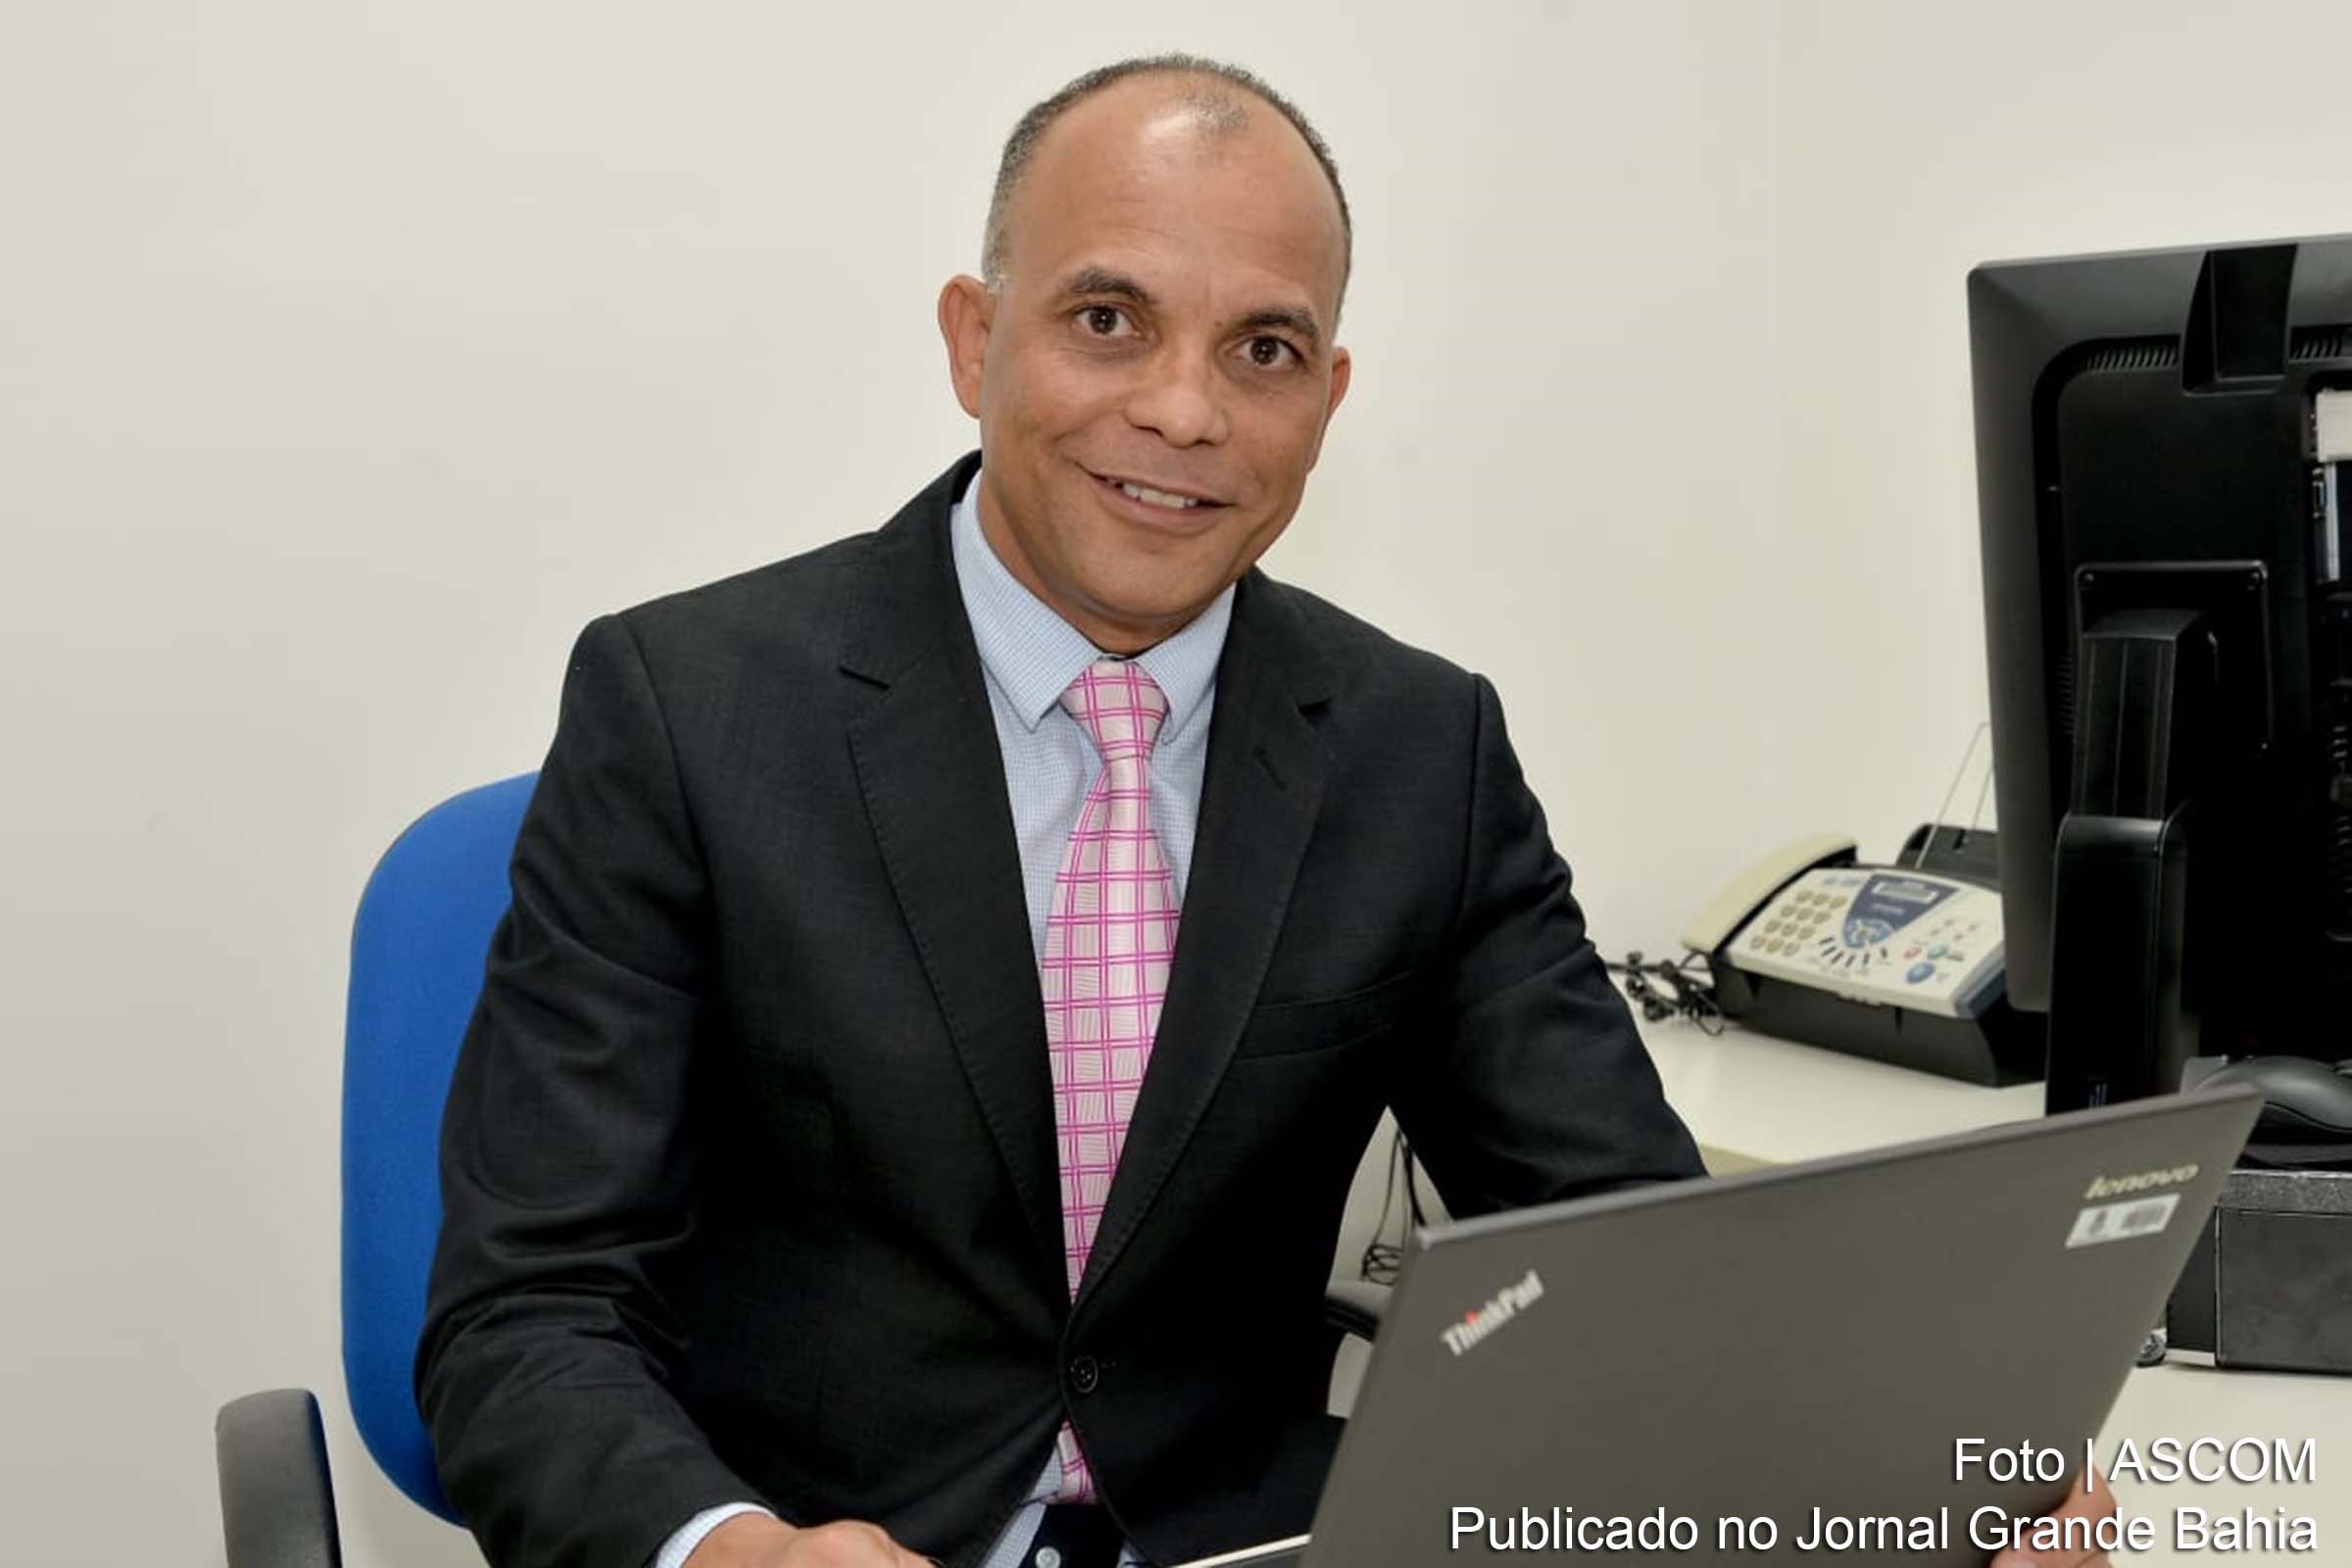 Antonio Henrique da Silva, Juiz da 2ª Vara Criminal da Comarca de Feira de Santana e Coordenador do Comitê Local da Governança da Política de Gestão de Pessoas do TJBA.